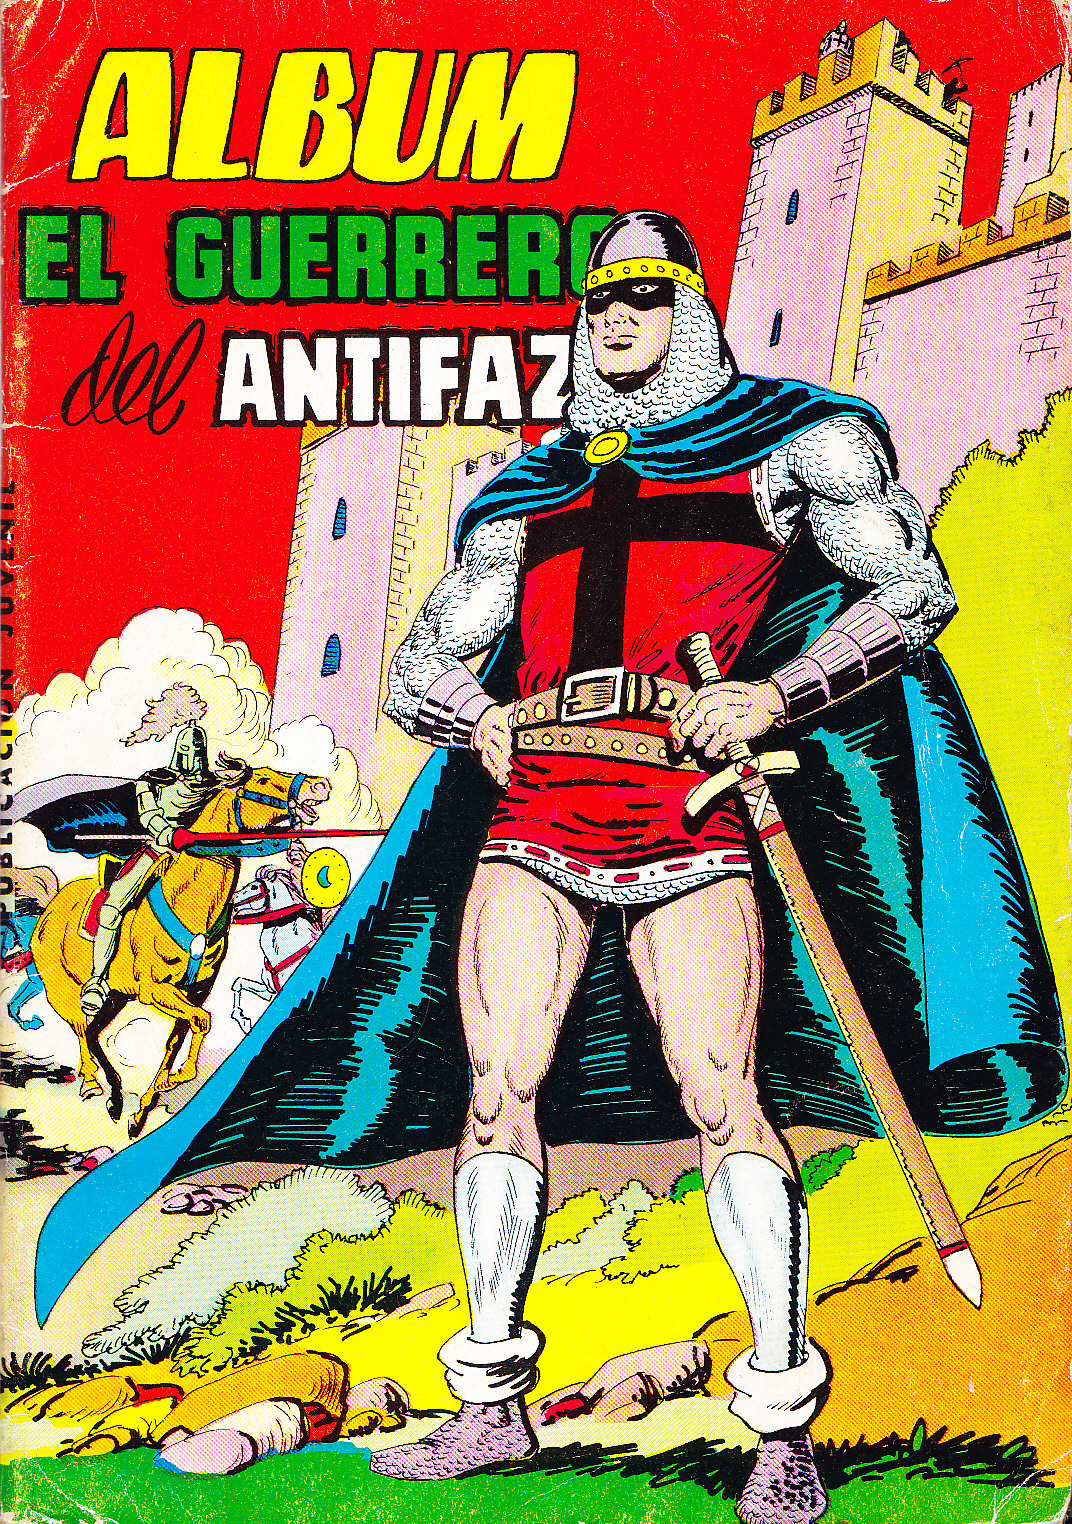 EL GUERRERO DEL ANTIFAZ. 1981